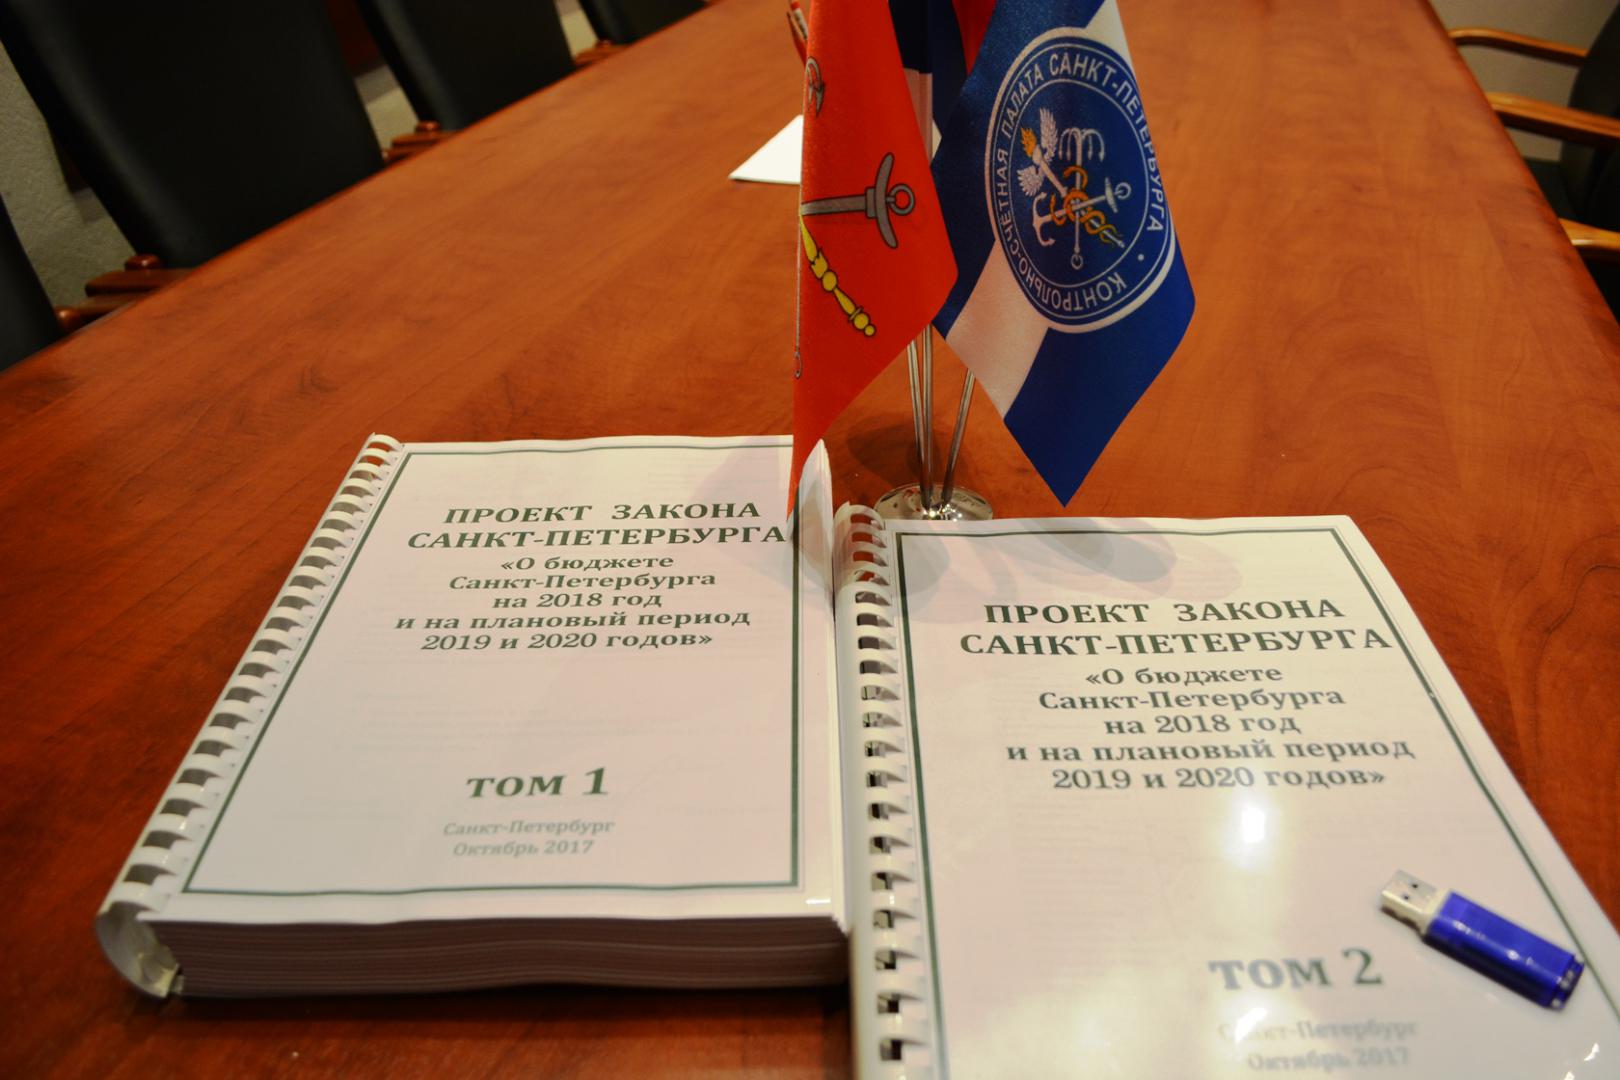 Контрольно-счетная палата Санкт-Петербурга приступила к проведению экспертизы проекта закона о бюджете на 2018 год и на плановый период